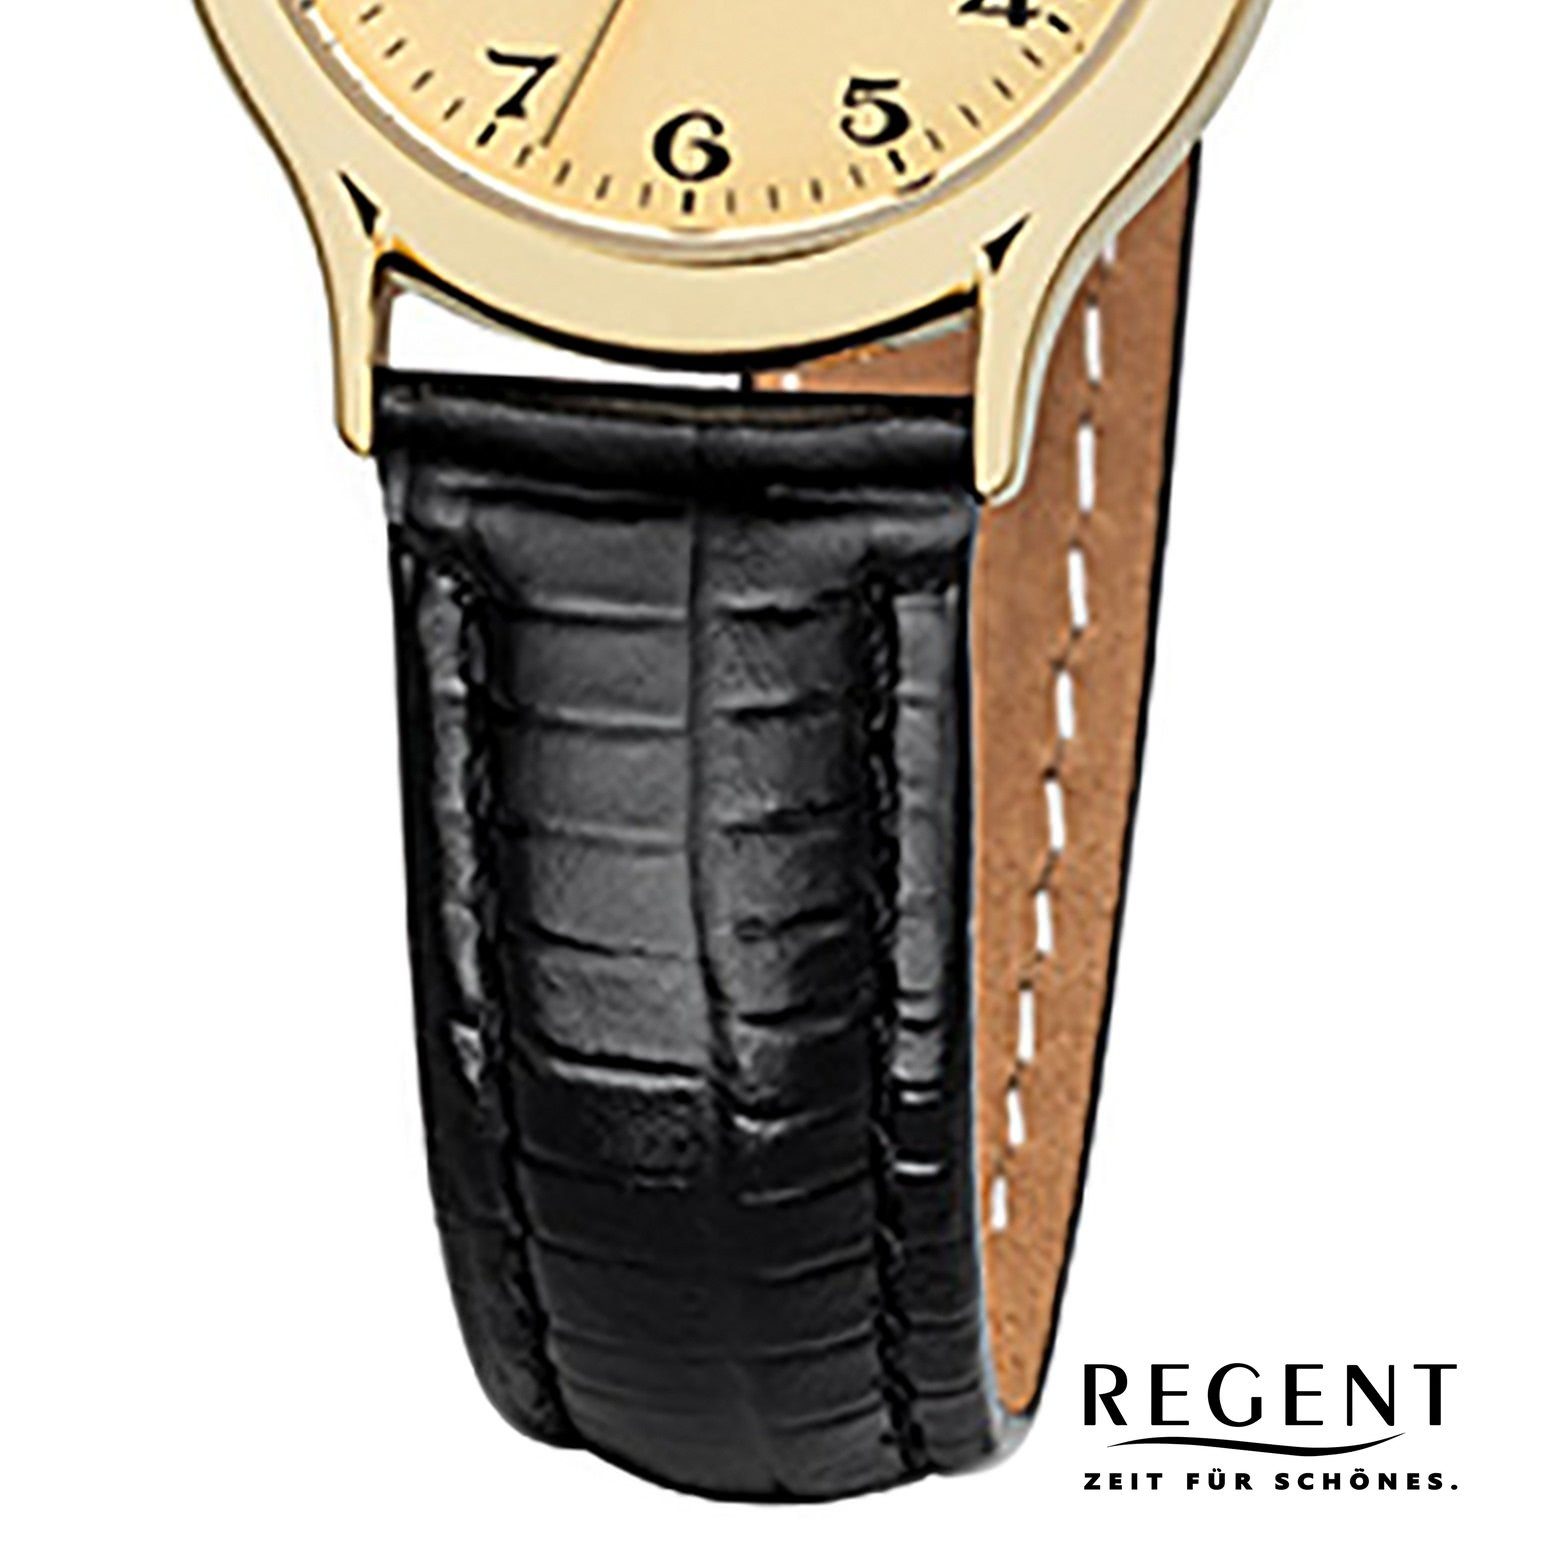 schwarz Regent Quarzuhr klein 24mm), Analog, Lederarmband Regent (ca. Damen Armbanduhr Damen-Armbanduhr rund,